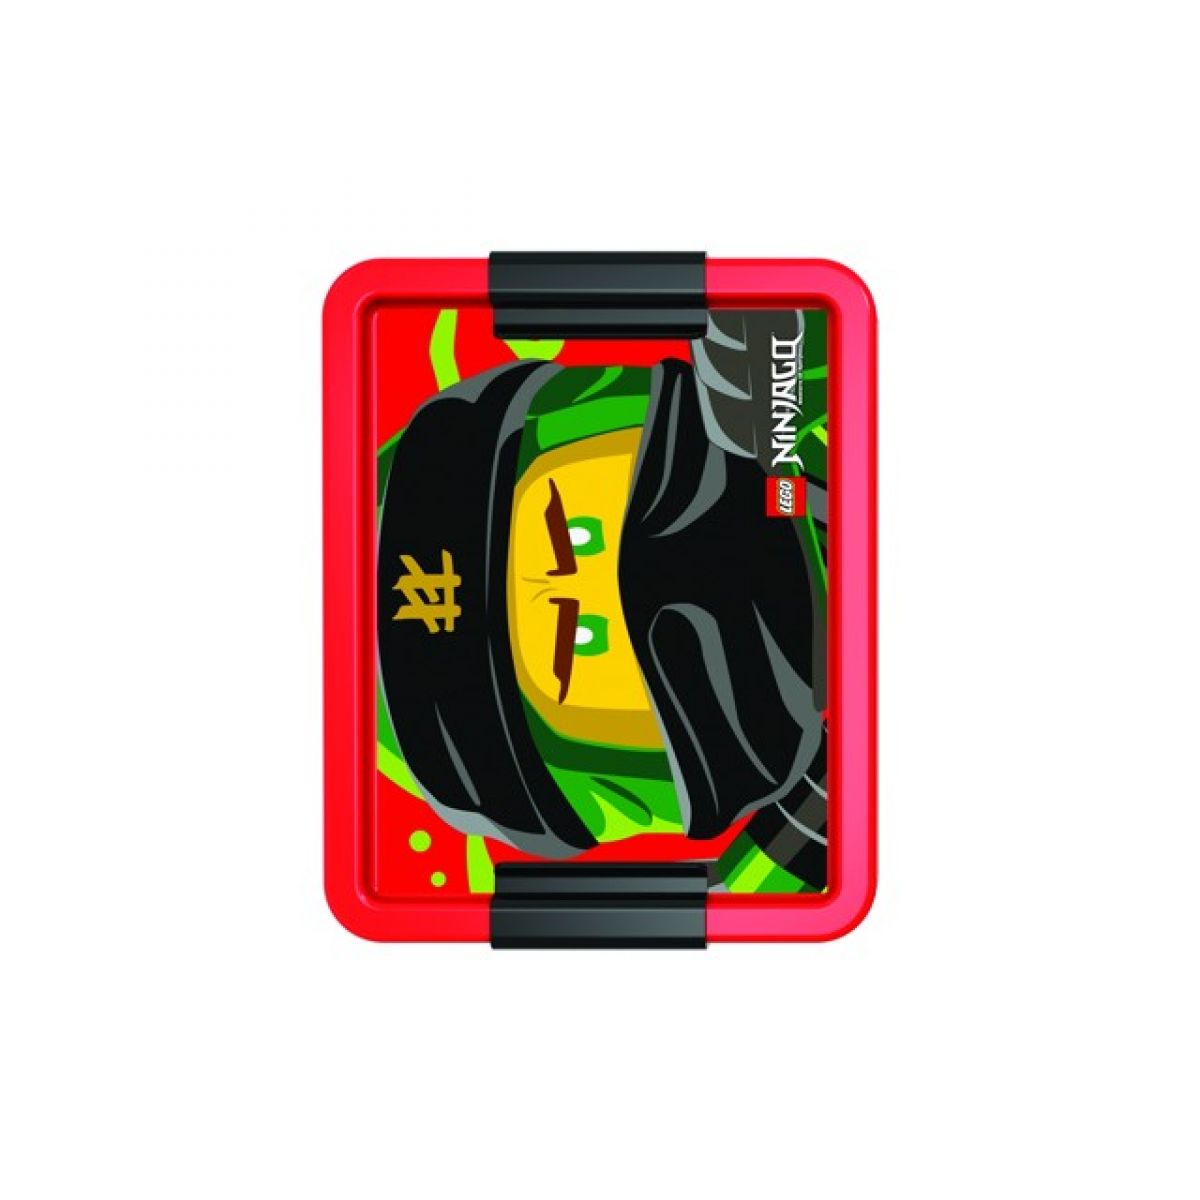 LEGO® Ninjago Classic box na svačinu - červená